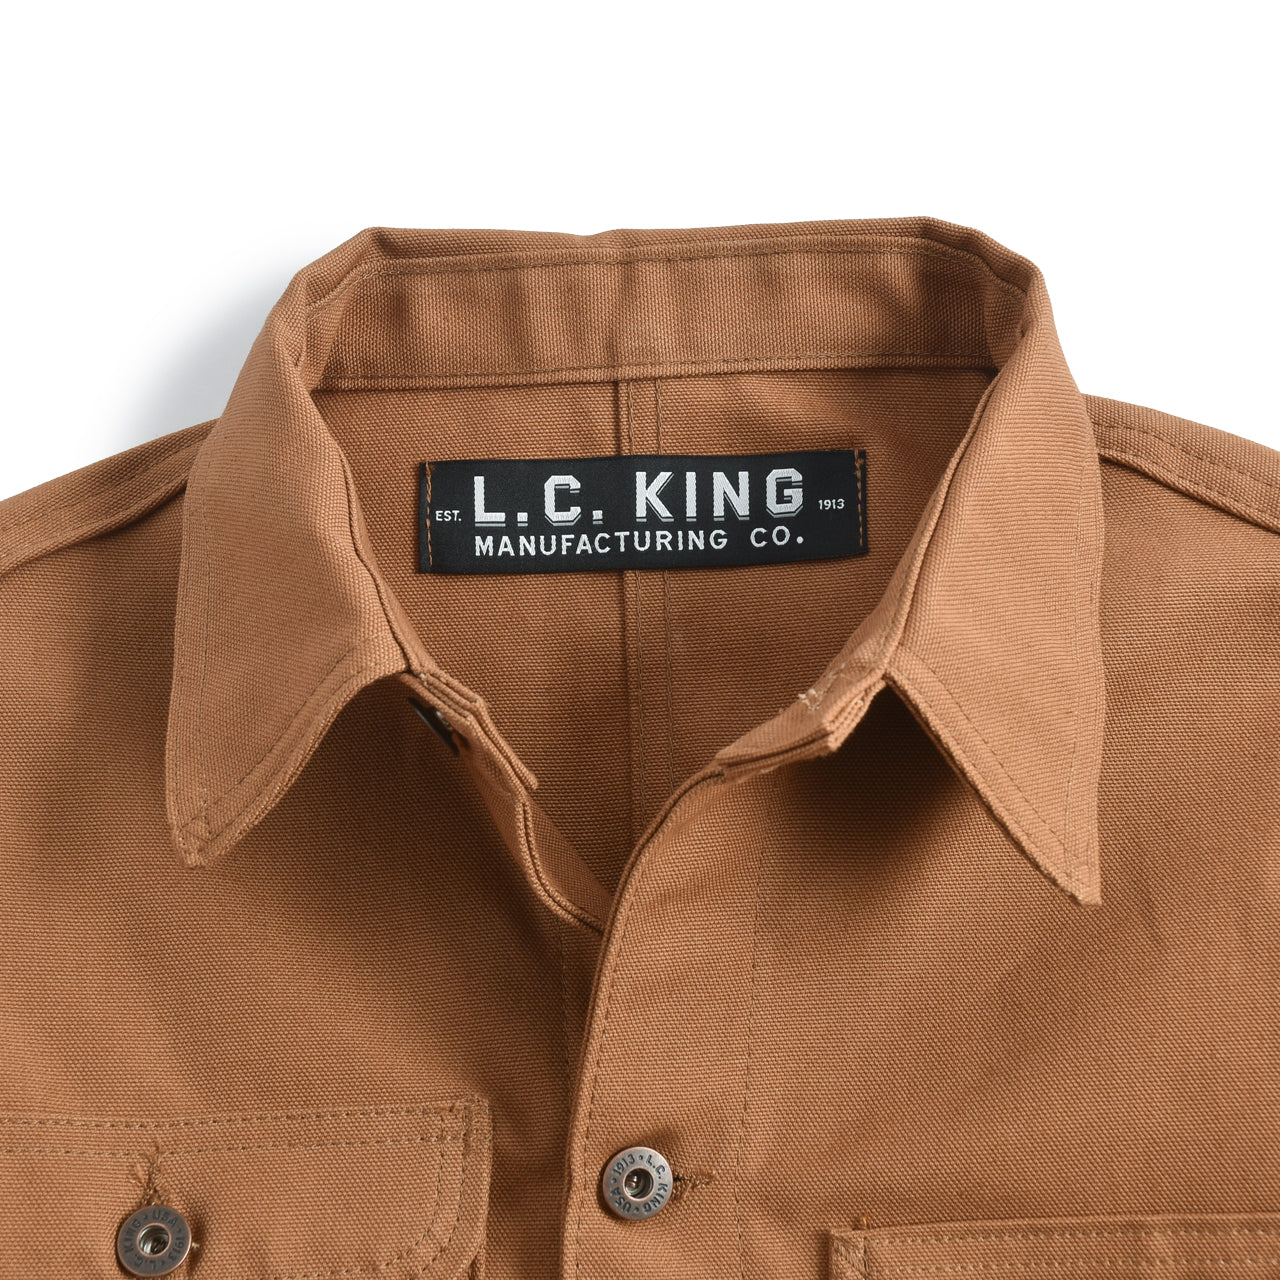 L.C. King Manufacturing